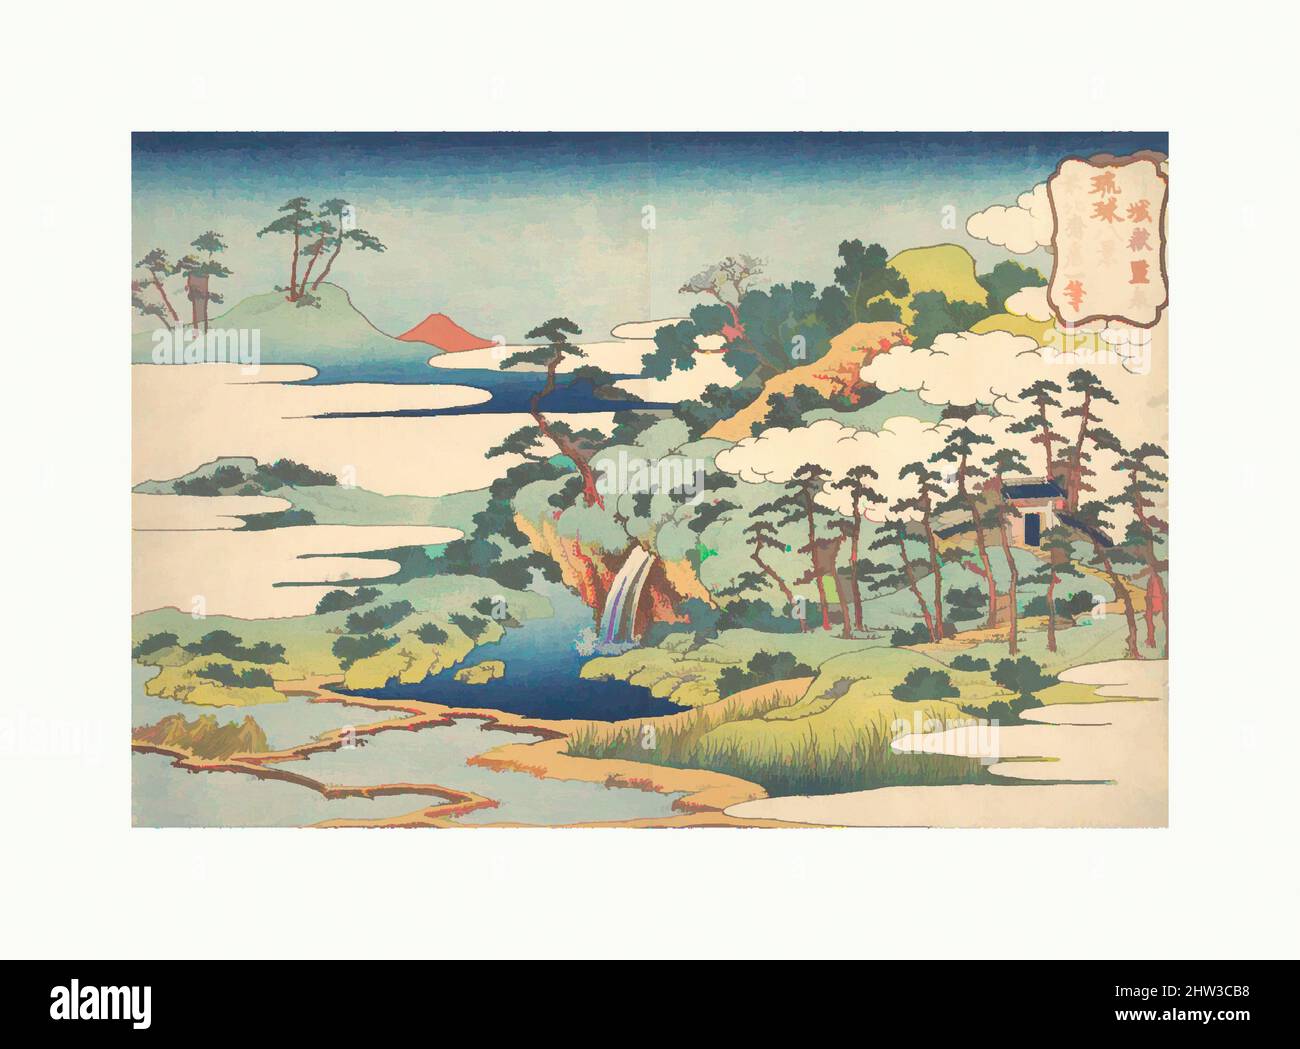 Arte ispirata da 琉球八景 城嶽霊泉, la Sacra Primavera a Jōgaku (Jōgaku reisen), dalla serie otto viste delle Isole Ryūkyū (Ryūkyū hakkei), periodo Edo (1615–1868), ca. 1832, Giappone, stampa a blocchi di legno policromi; inchiostro e colore su carta, 9 7/8 x 14 5/8 pollici (25,1 x 37,1 cm), stampe, opere classiche modernizzate da Artotop con un tuffo di modernità. Forme, colore e valore, impatto visivo accattivante sulle emozioni artistiche attraverso la libertà delle opere d'arte in modo contemporaneo. Un messaggio senza tempo che persegue una nuova direzione selvaggiamente creativa. Artisti che si rivolgono al supporto digitale e creano l'NFT Artotop Foto Stock